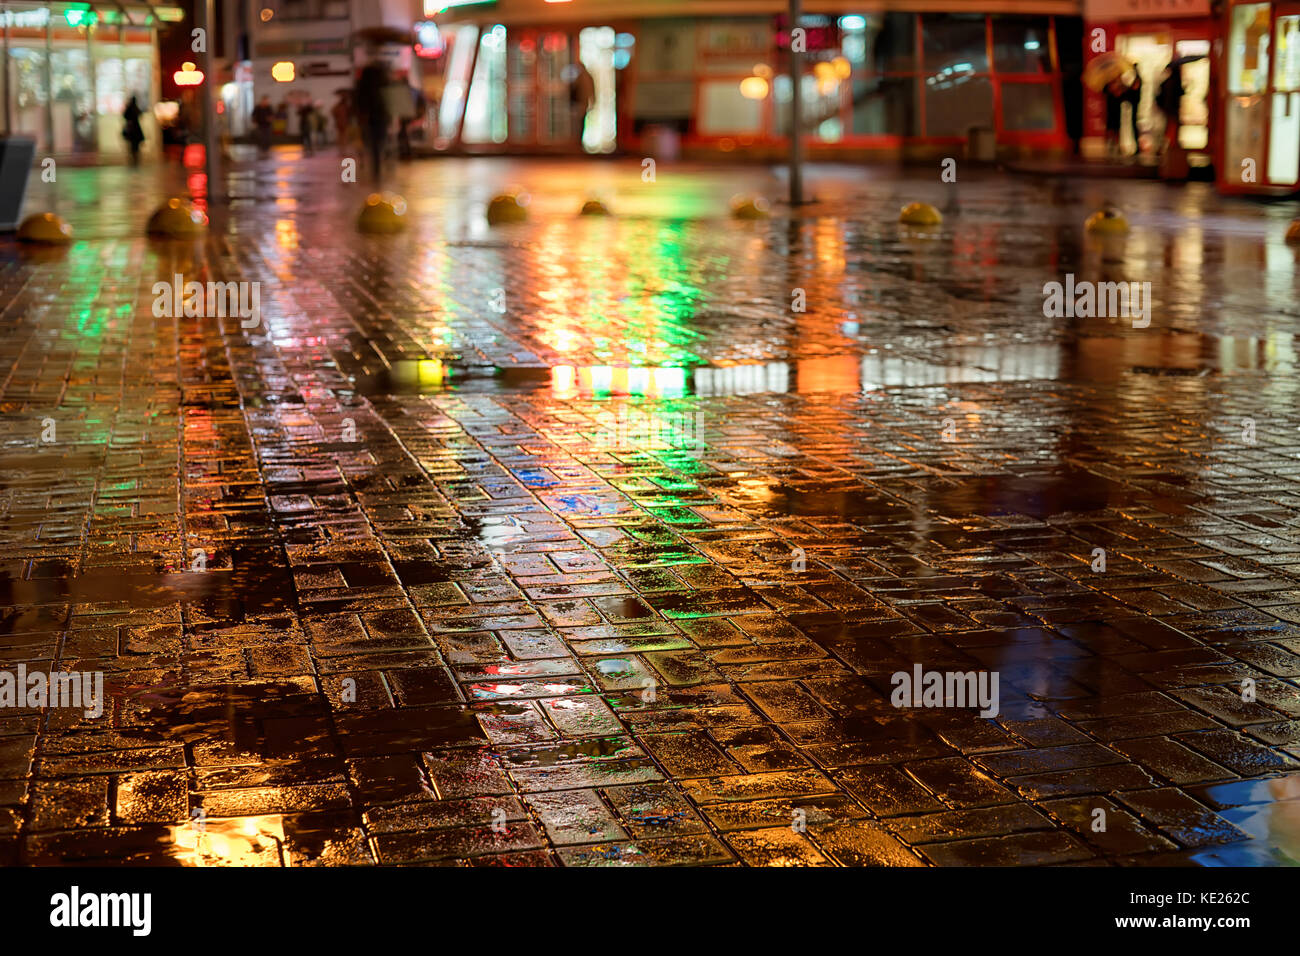 Regnerischen Nacht in der Stadt. nasse Straße, Farblicht Reflexion und verschwommene Silhouetten mit Sonnenschirmen. Stockfoto